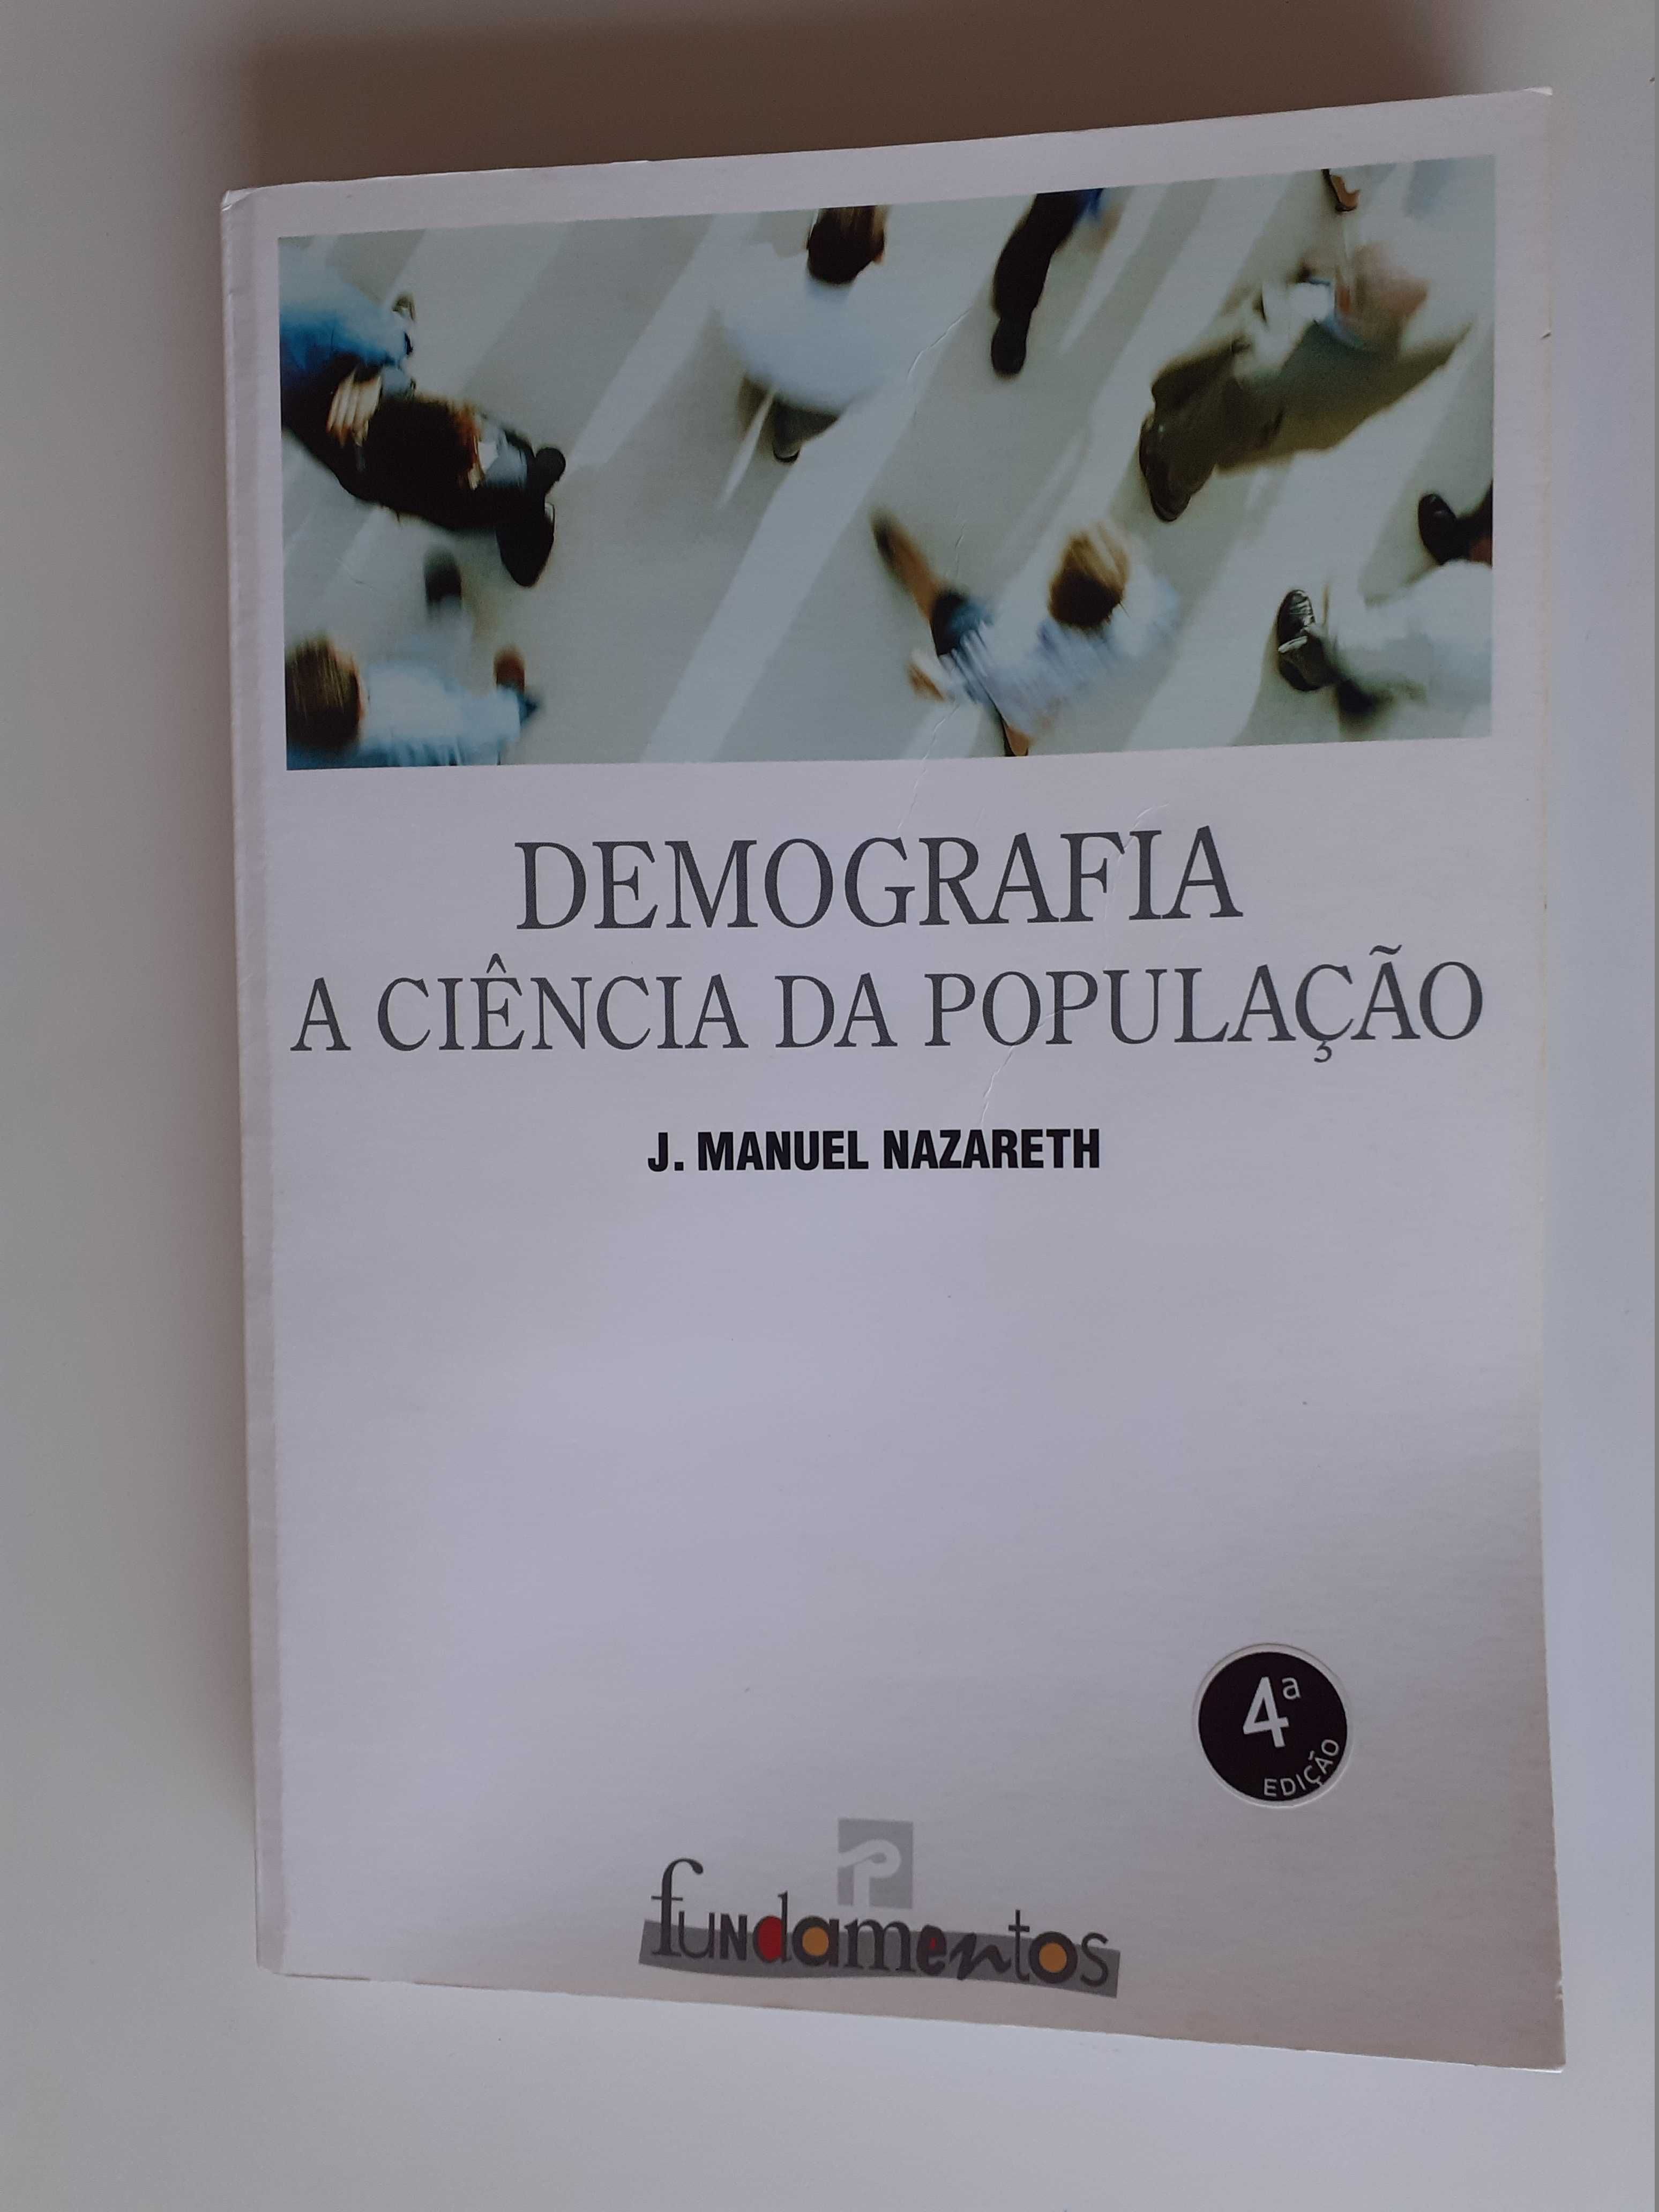 Livro "Demografia - A Ciência da População"